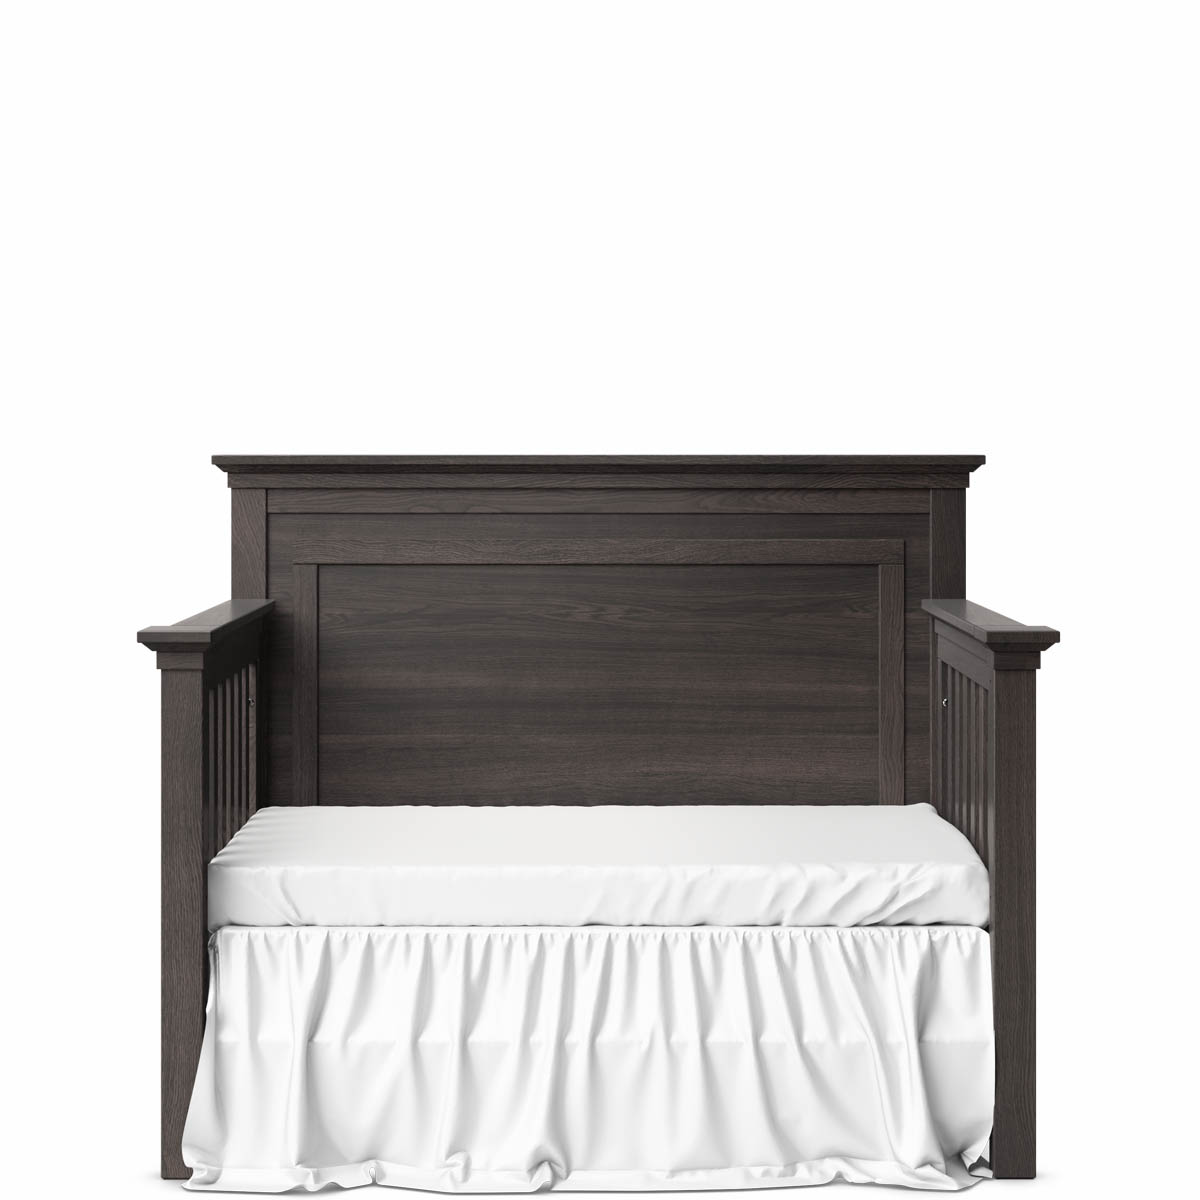 Romina Furniture Karisma Panel Crib - Oil Grey